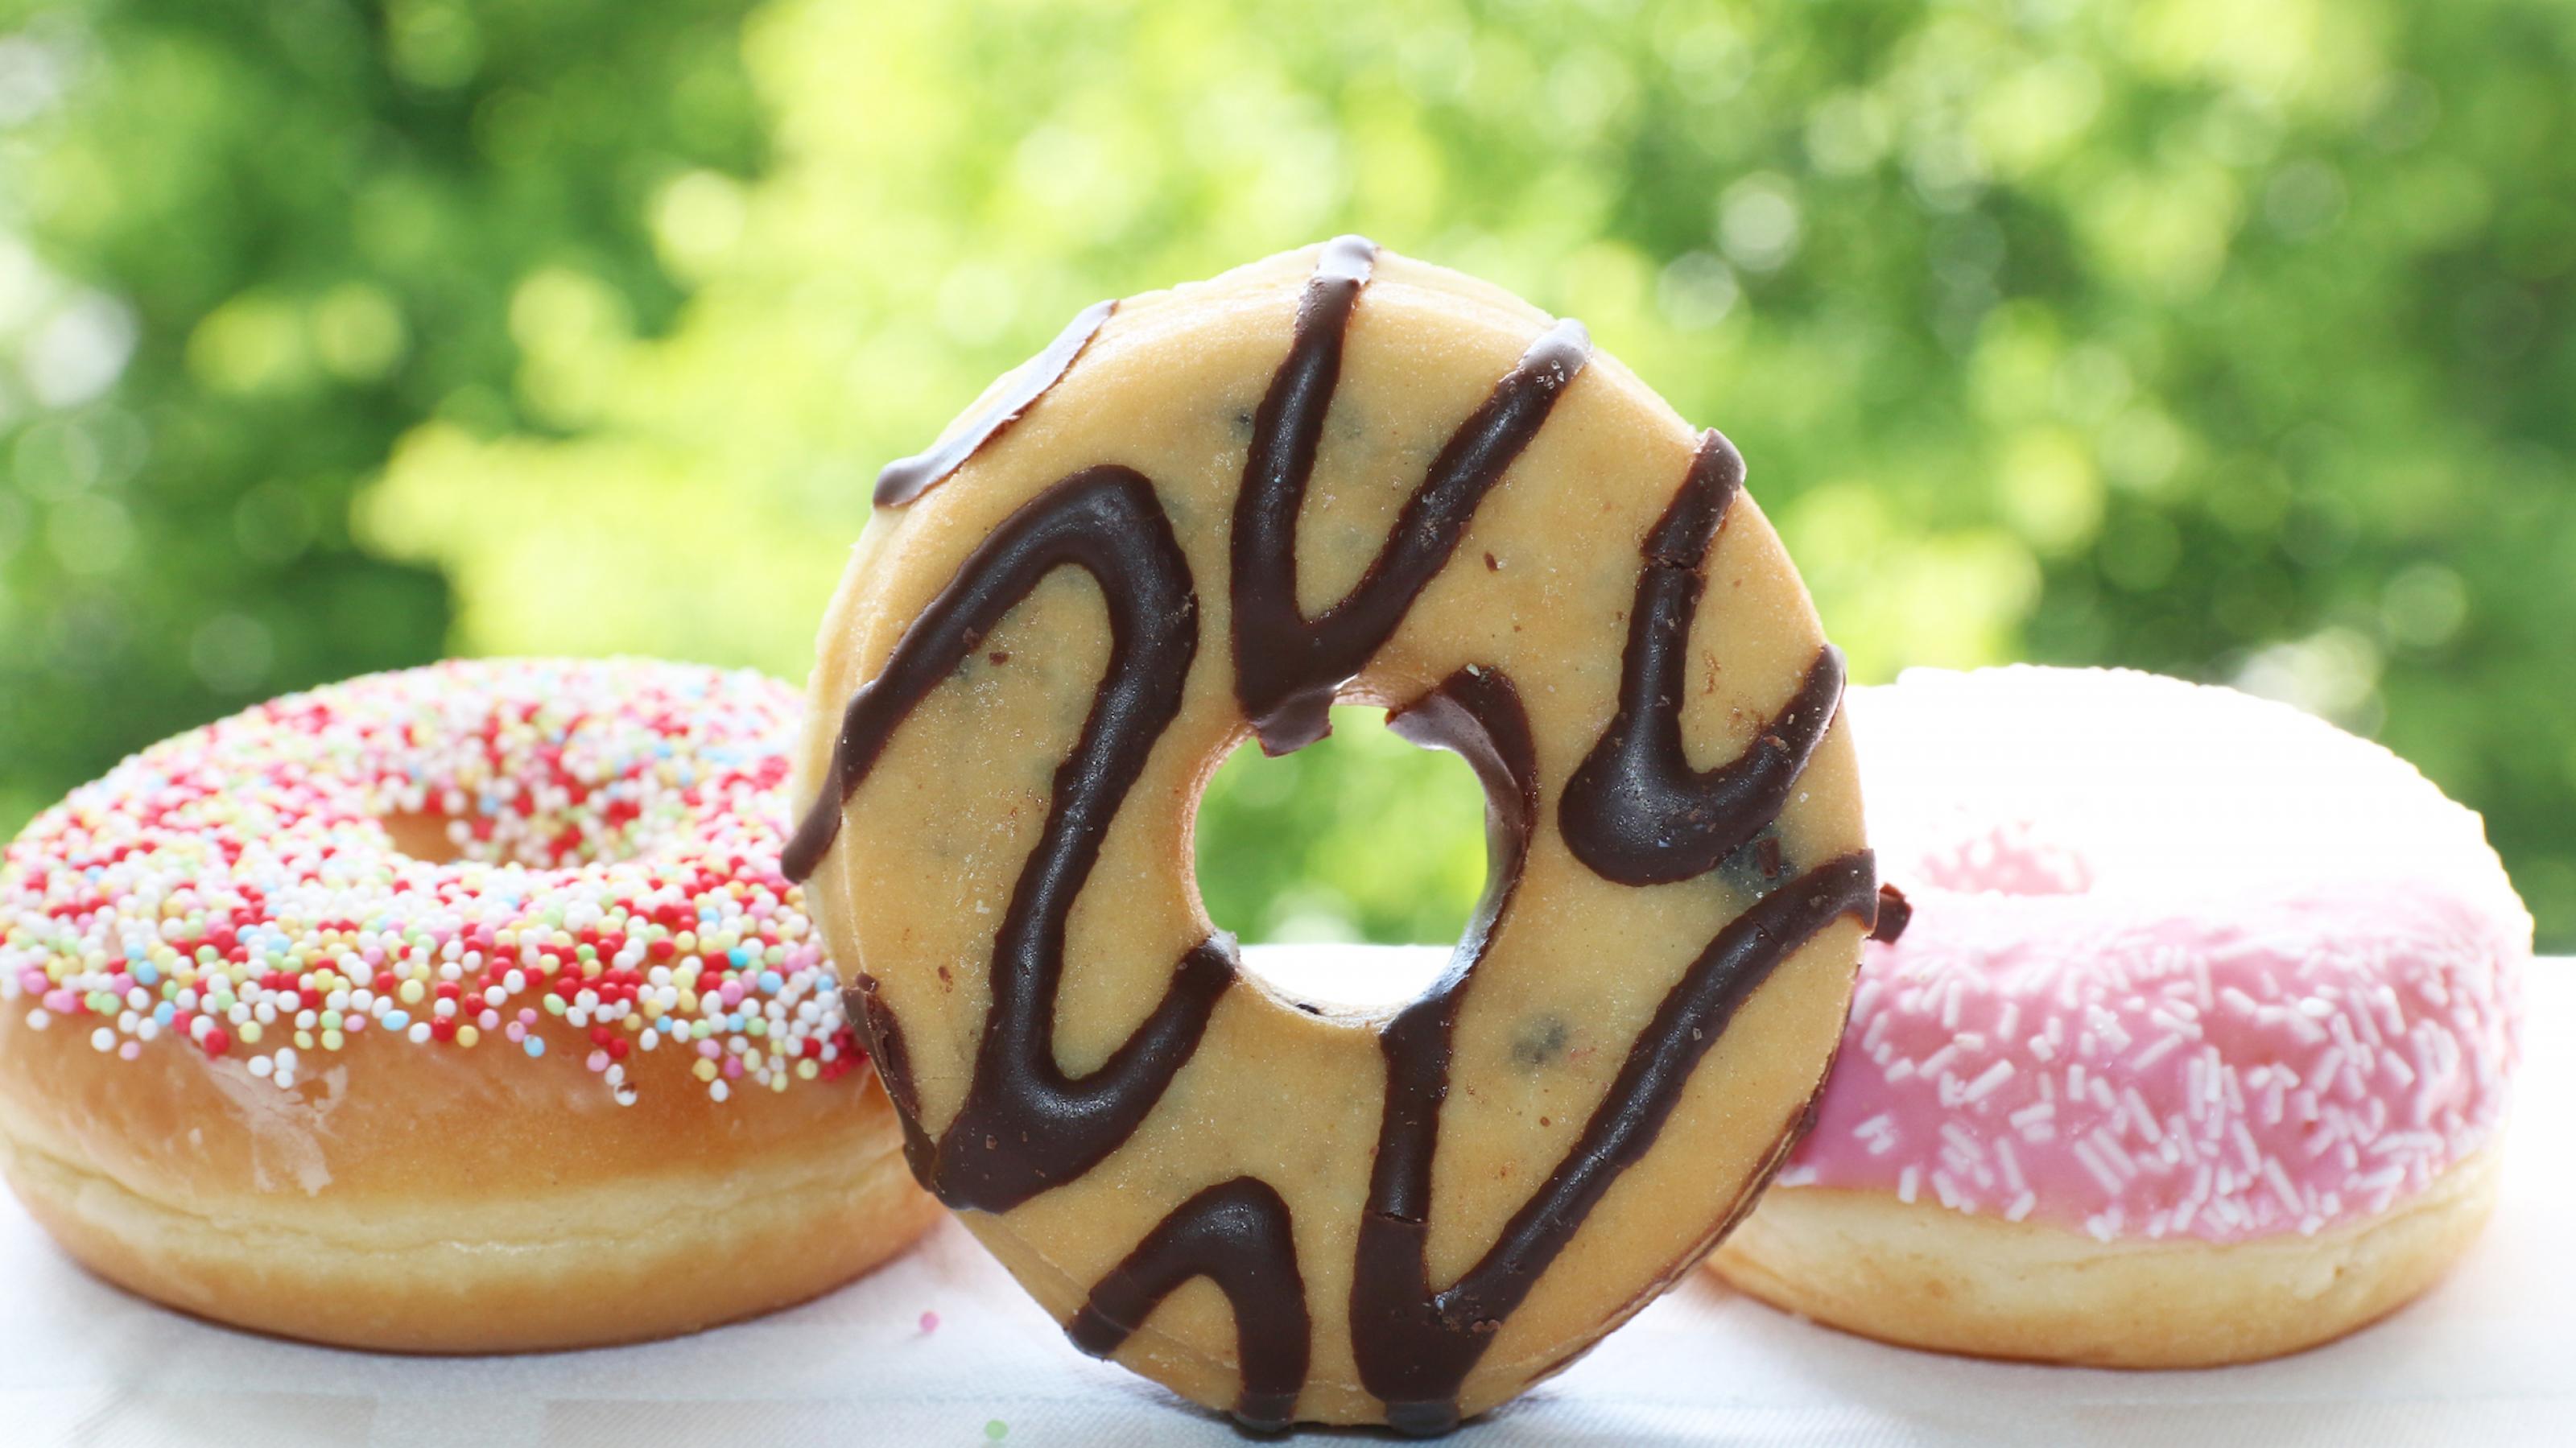 Drei Donuts liegen auf einen weißen Tuch vor einem offenen Fenster, der mittlere steht so auf der Seite, dass man durch das Loch blicken kann. Der linke ist mit Zuckerperlen verziert, der mittlere mit Schleifen von Schokoguss, der rechte mit rosa Zuckerguss. – Hefeteig, Loch in die Mitte, frittieren und verzieren – Doughnut oder Donut heißt die Kalorienbombe.